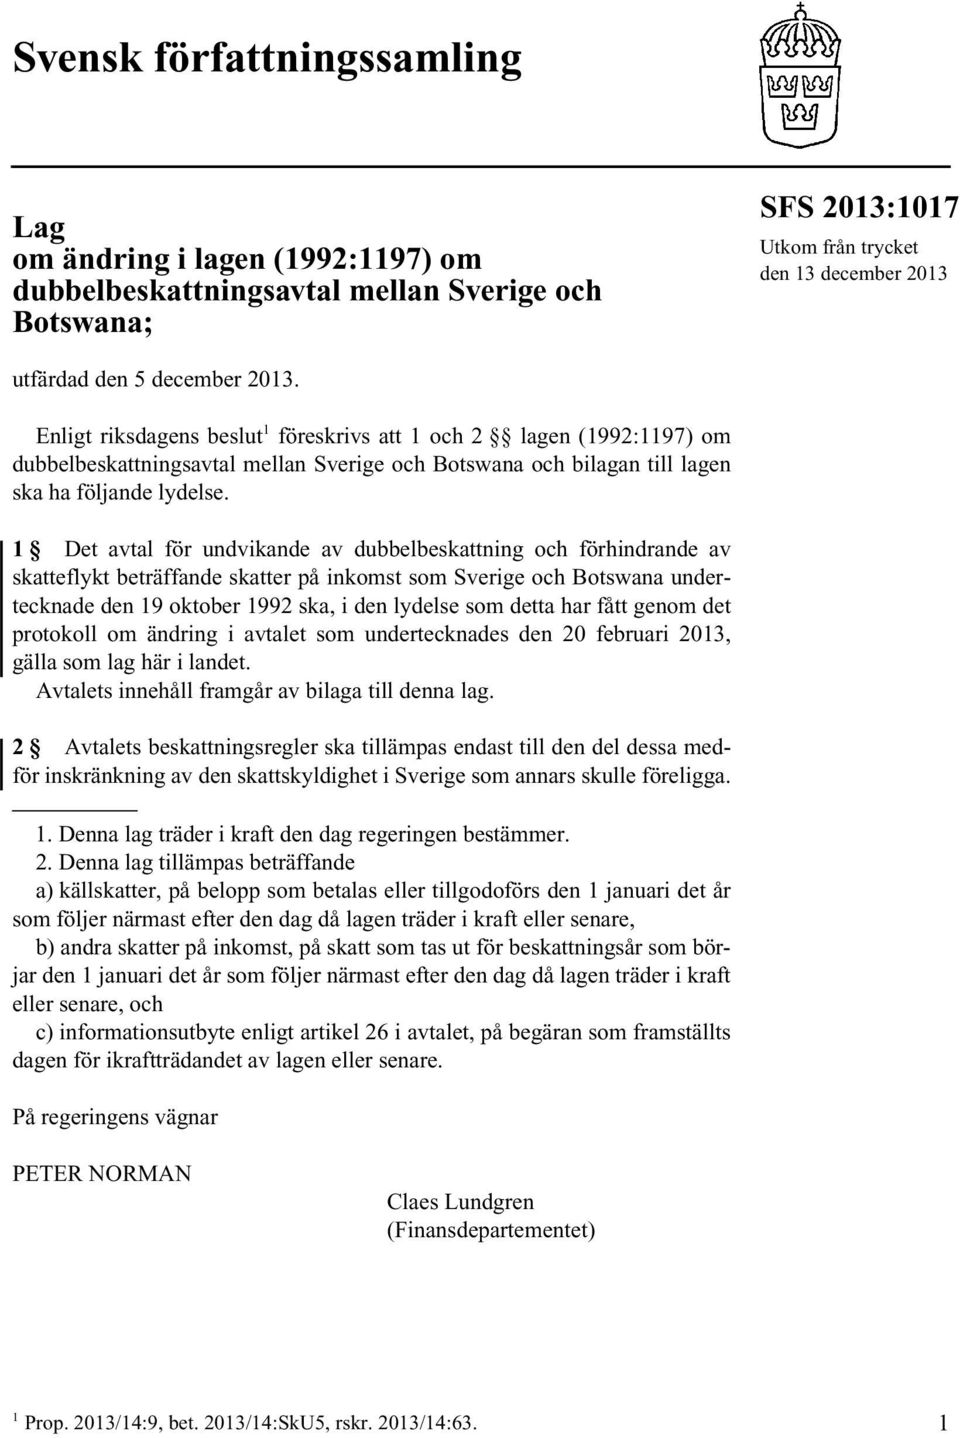 1 Det avtal för undvikande av dubbelbeskattning och förhindrande av skatteflykt beträffande skatter på inkomst som Sverige och Botswana undertecknade den 19 oktober 1992 ska, i den lydelse som detta